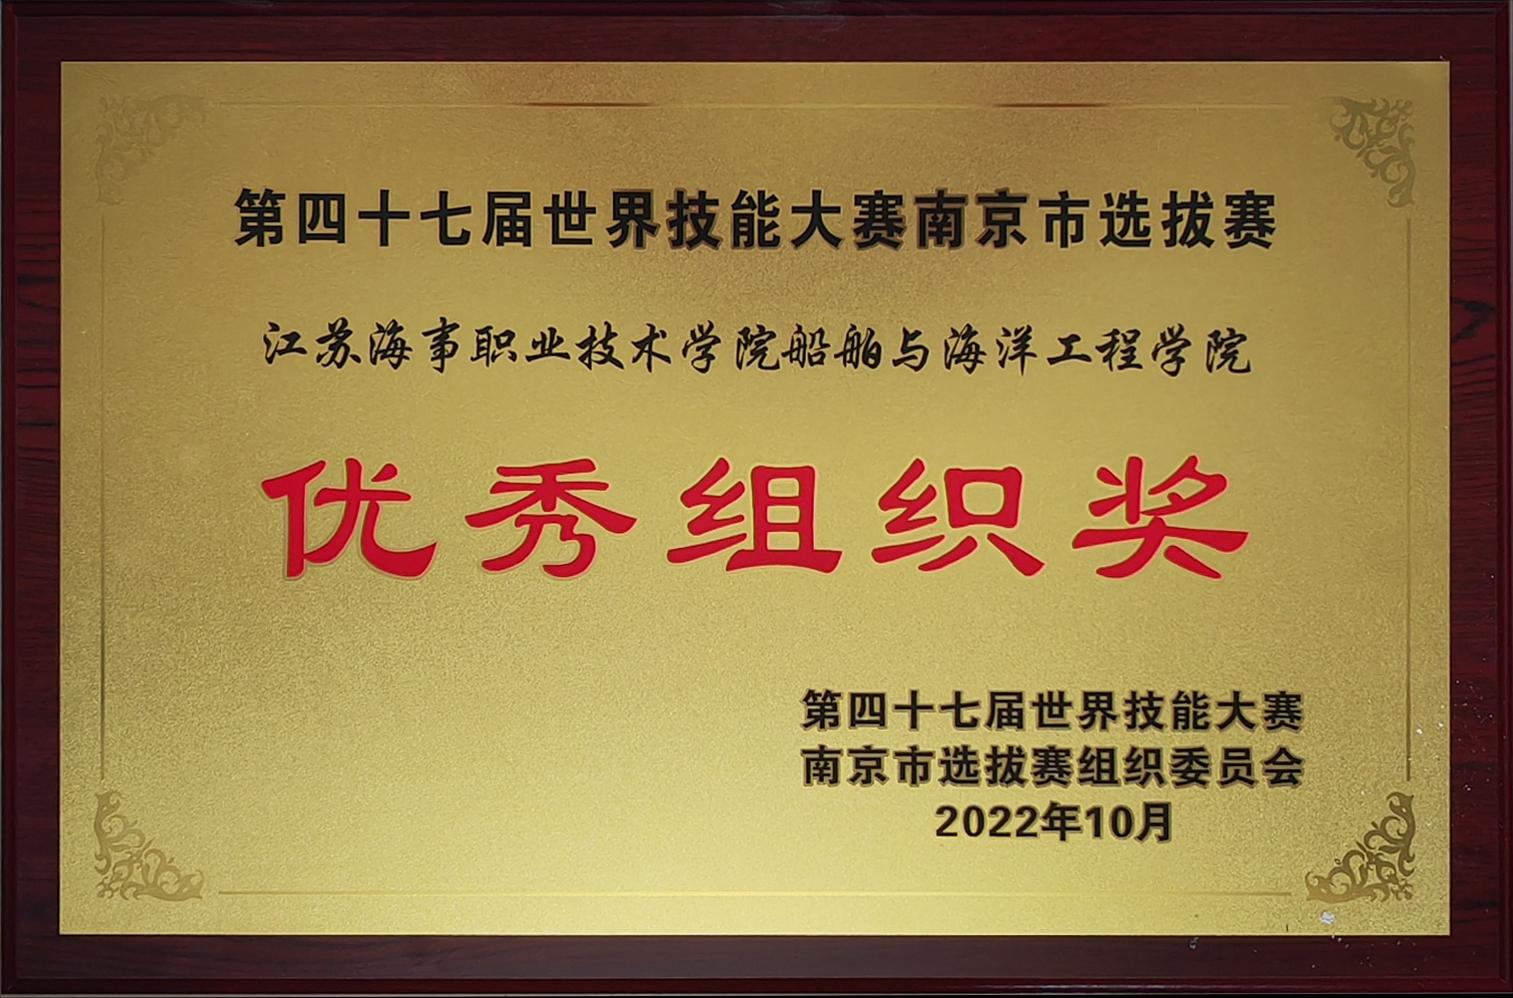 第47届世界技能大赛南京市选拔赛优秀组织奖